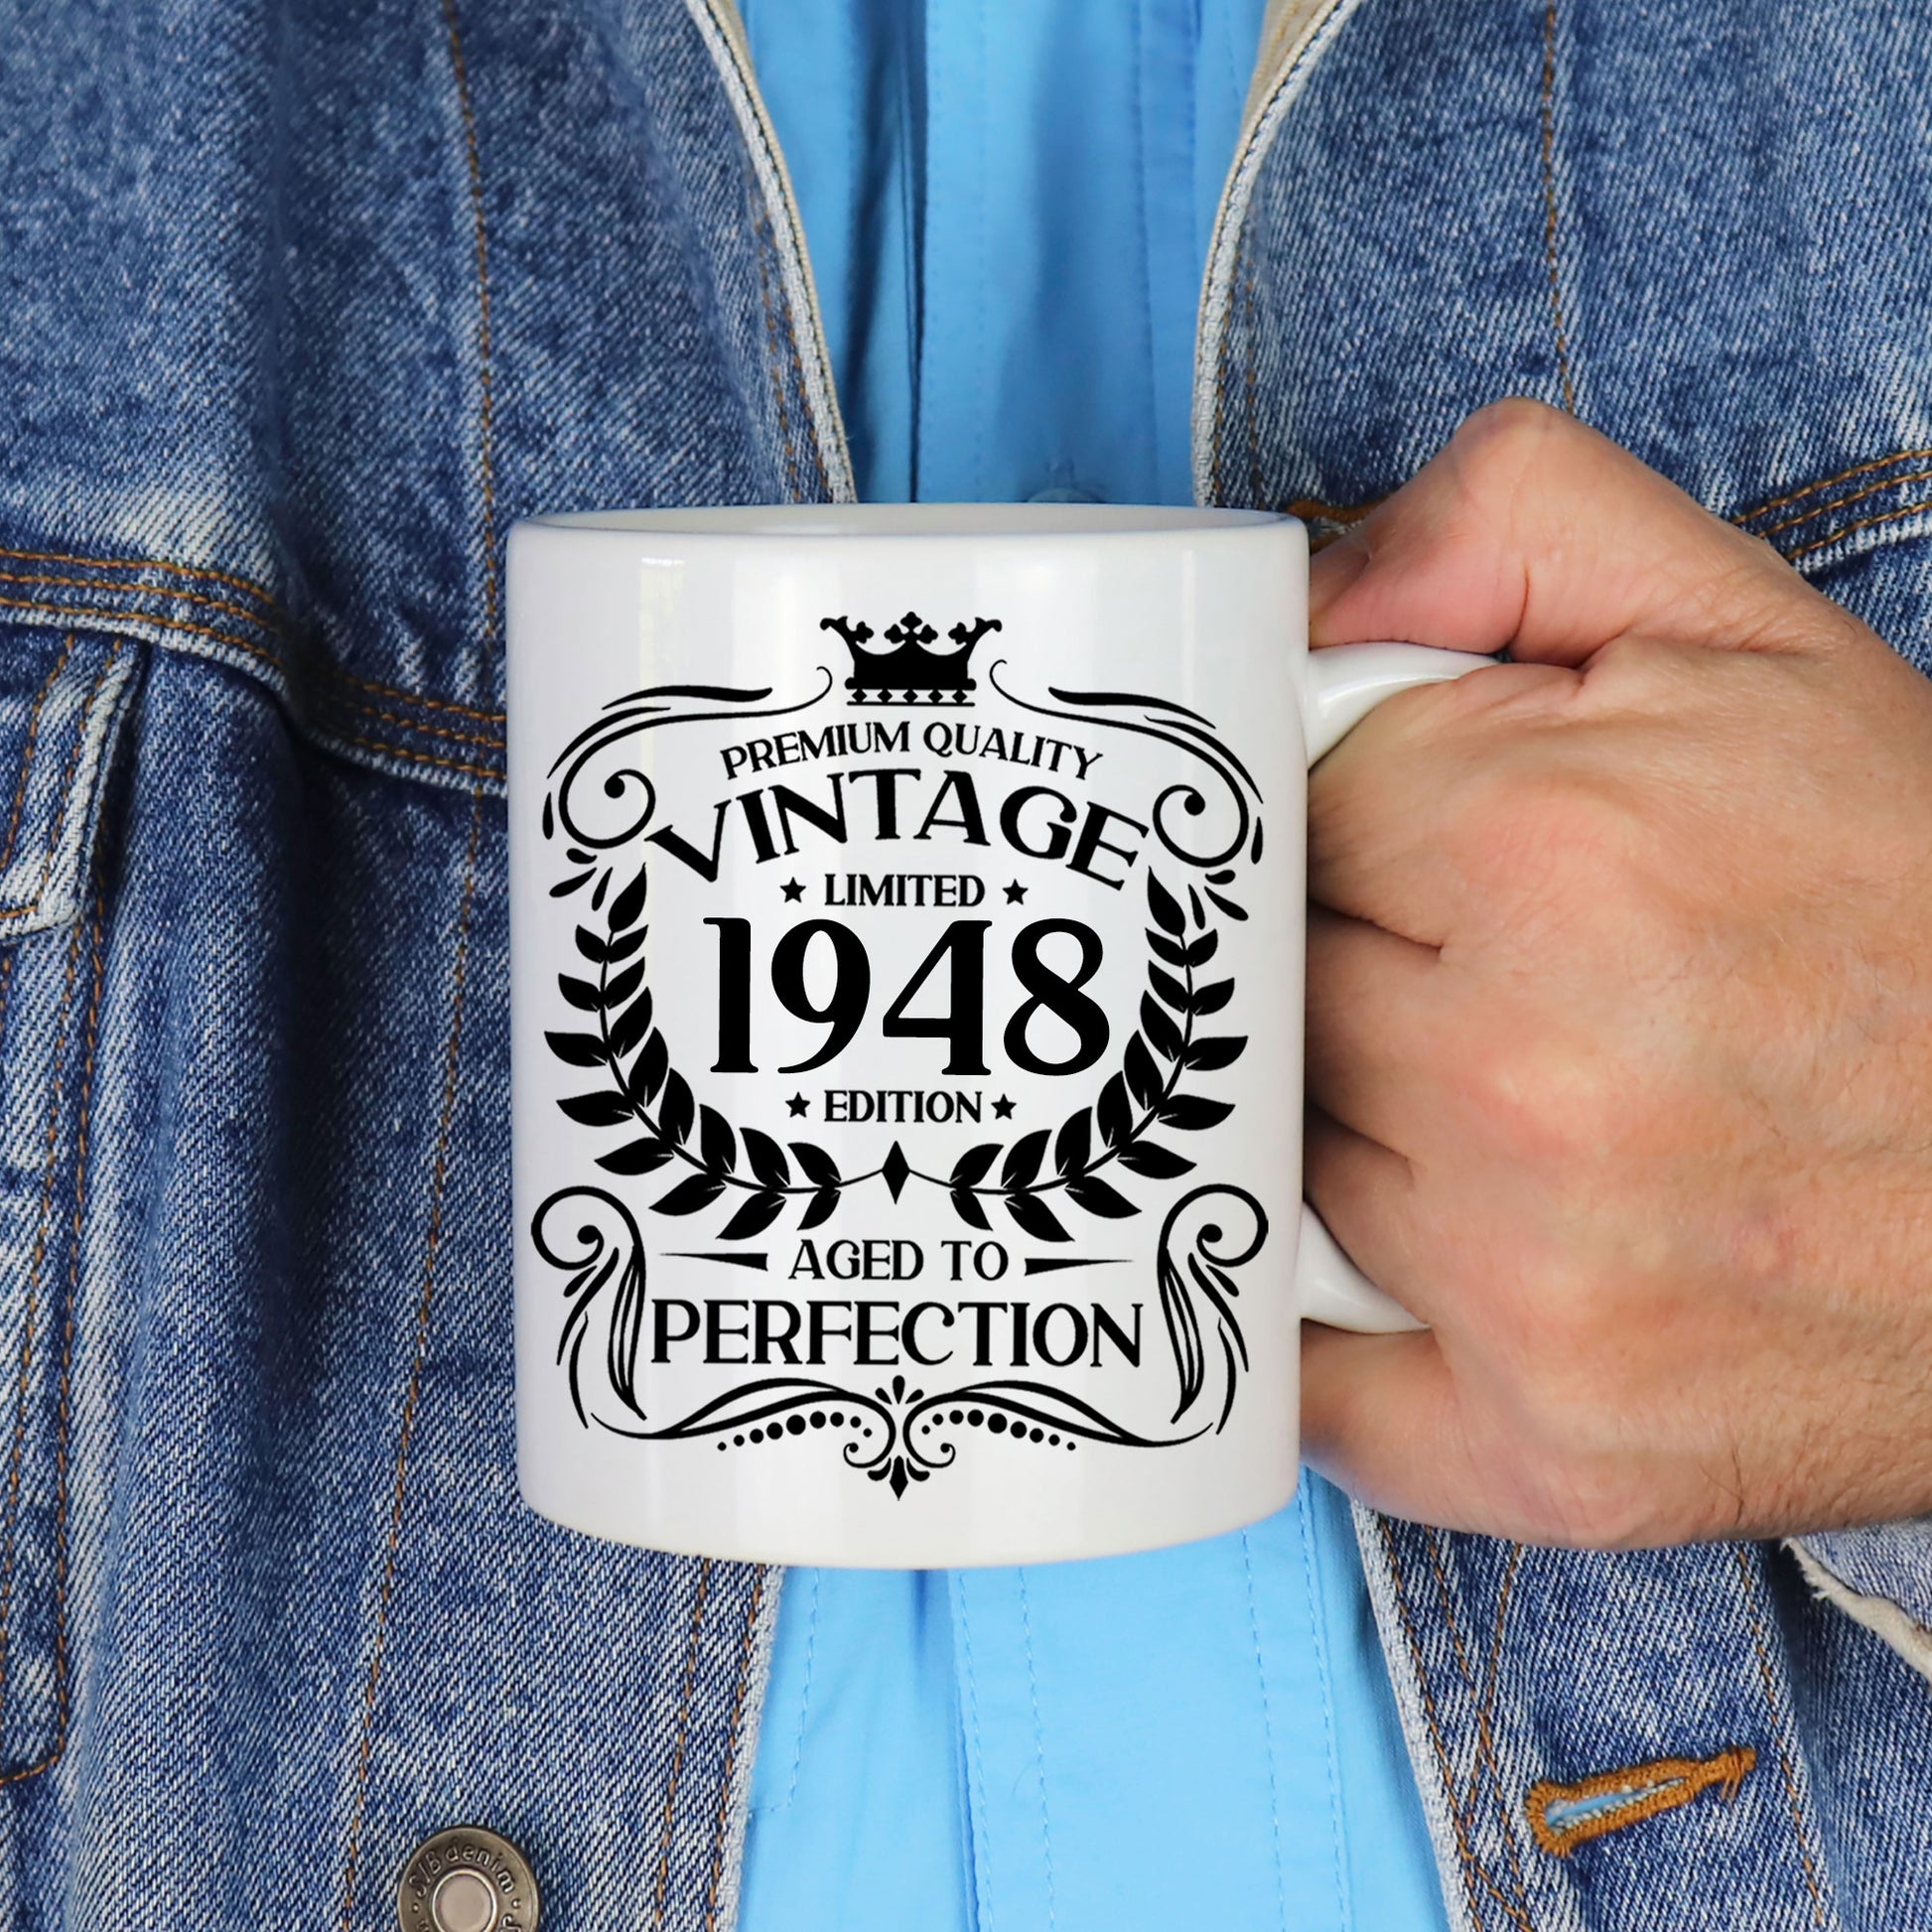 Personalised Vintage 1948 Mug and/or Coaster  - Always Looking Good -   